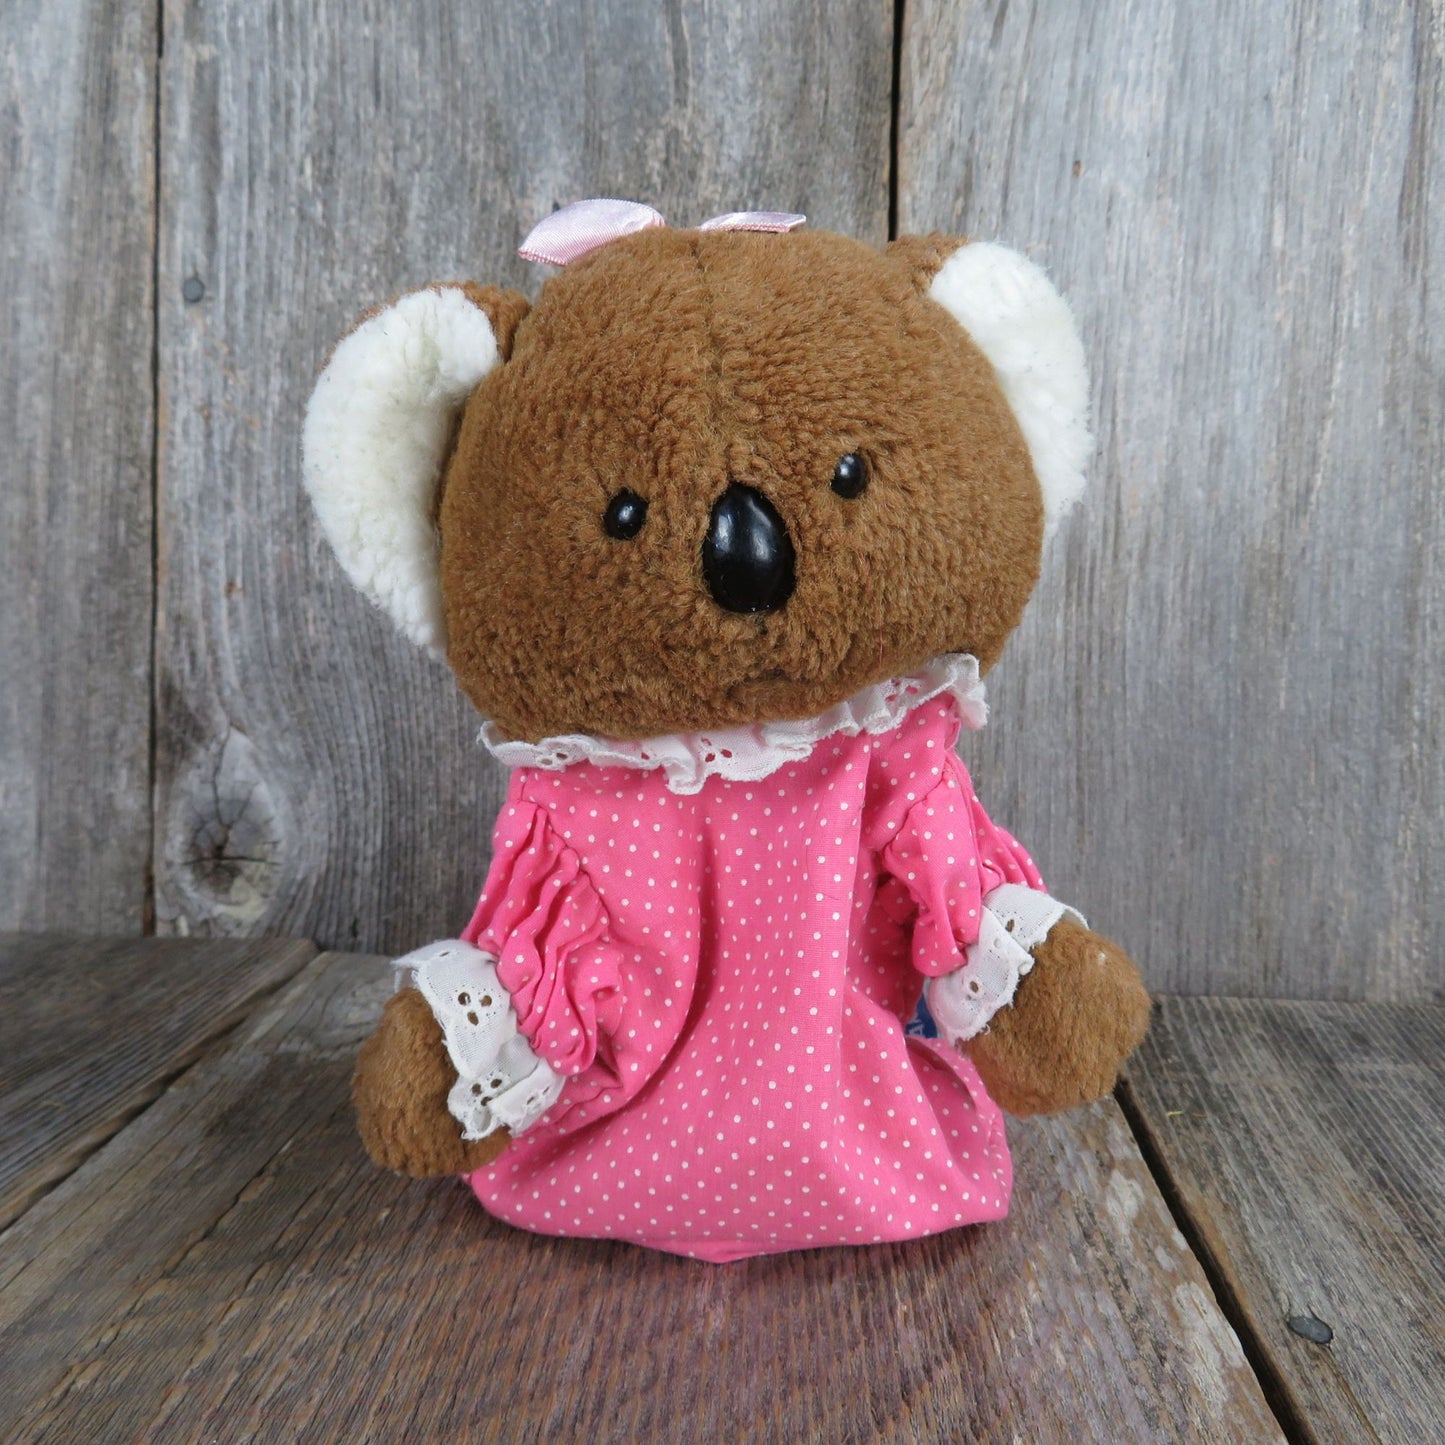 Vintage Koala Puppet Plush Pink Dress Lace Ruffle Stuffed Animal Dakin Plush Korea Pink 1985